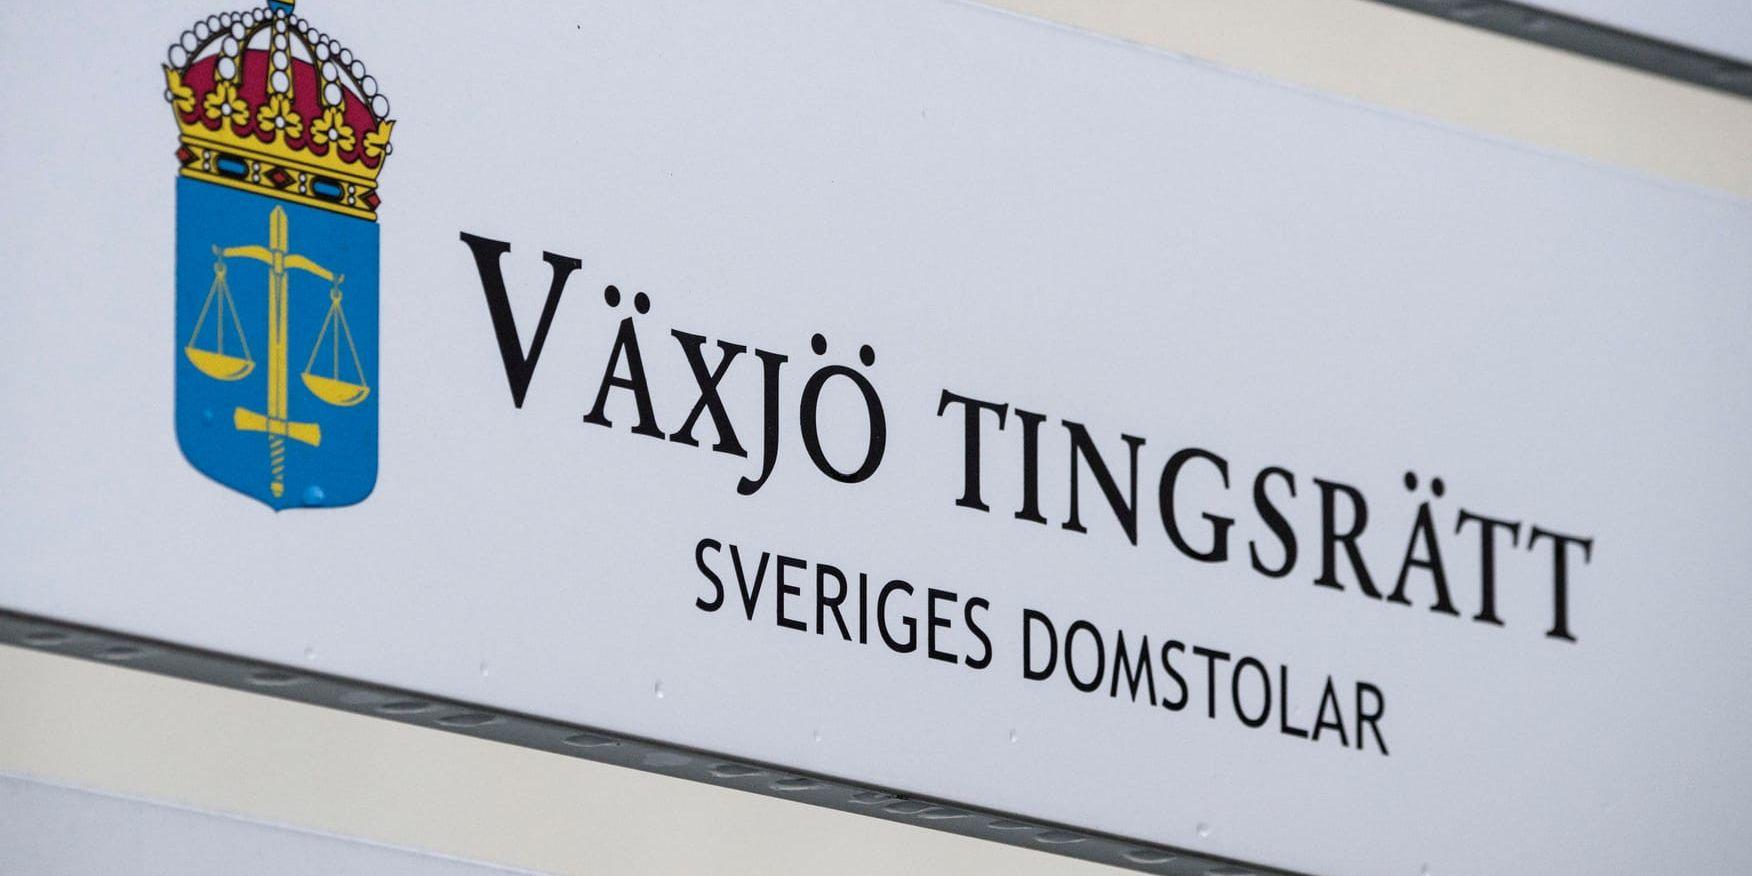 Advokater i en stor rättegång i Växjö har efter en tidningsgranskning sänkt sina ersättningskrav. Arkivbild.